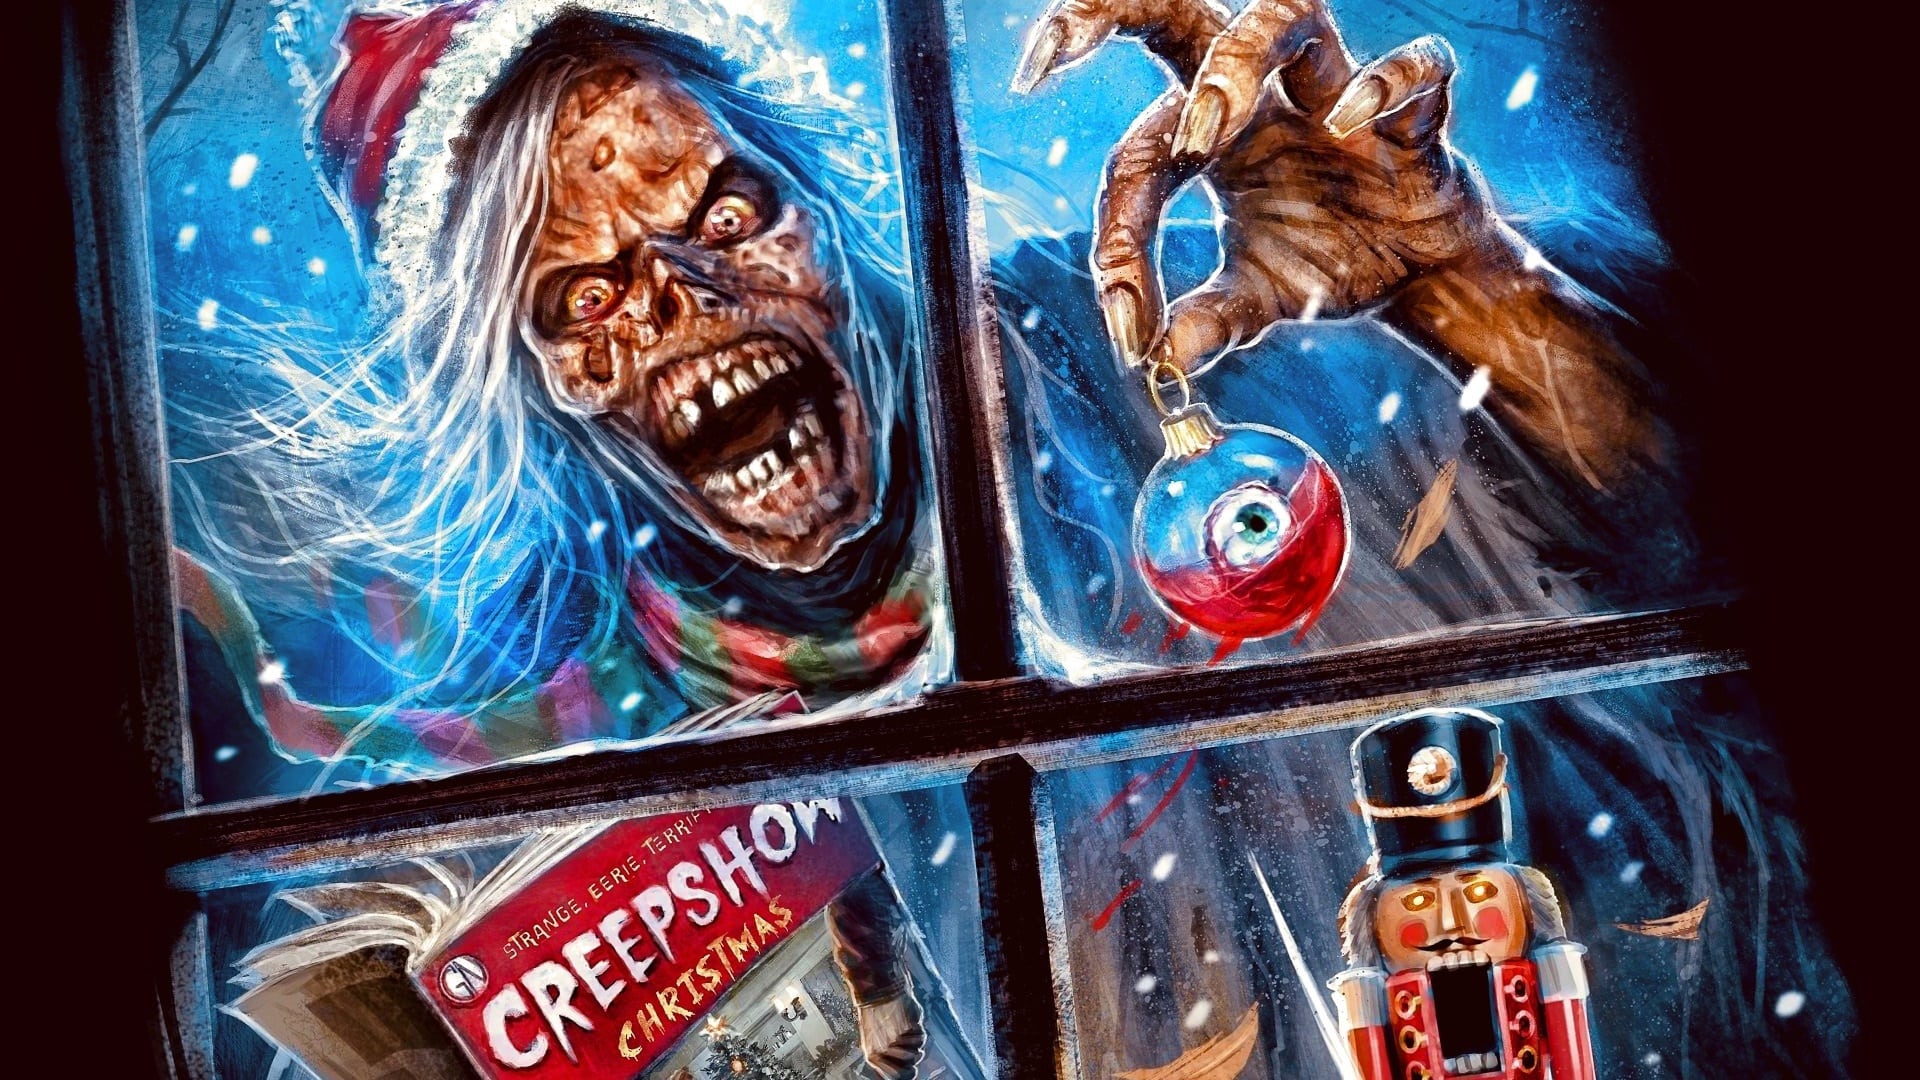 A Creepshow Holiday Special - film